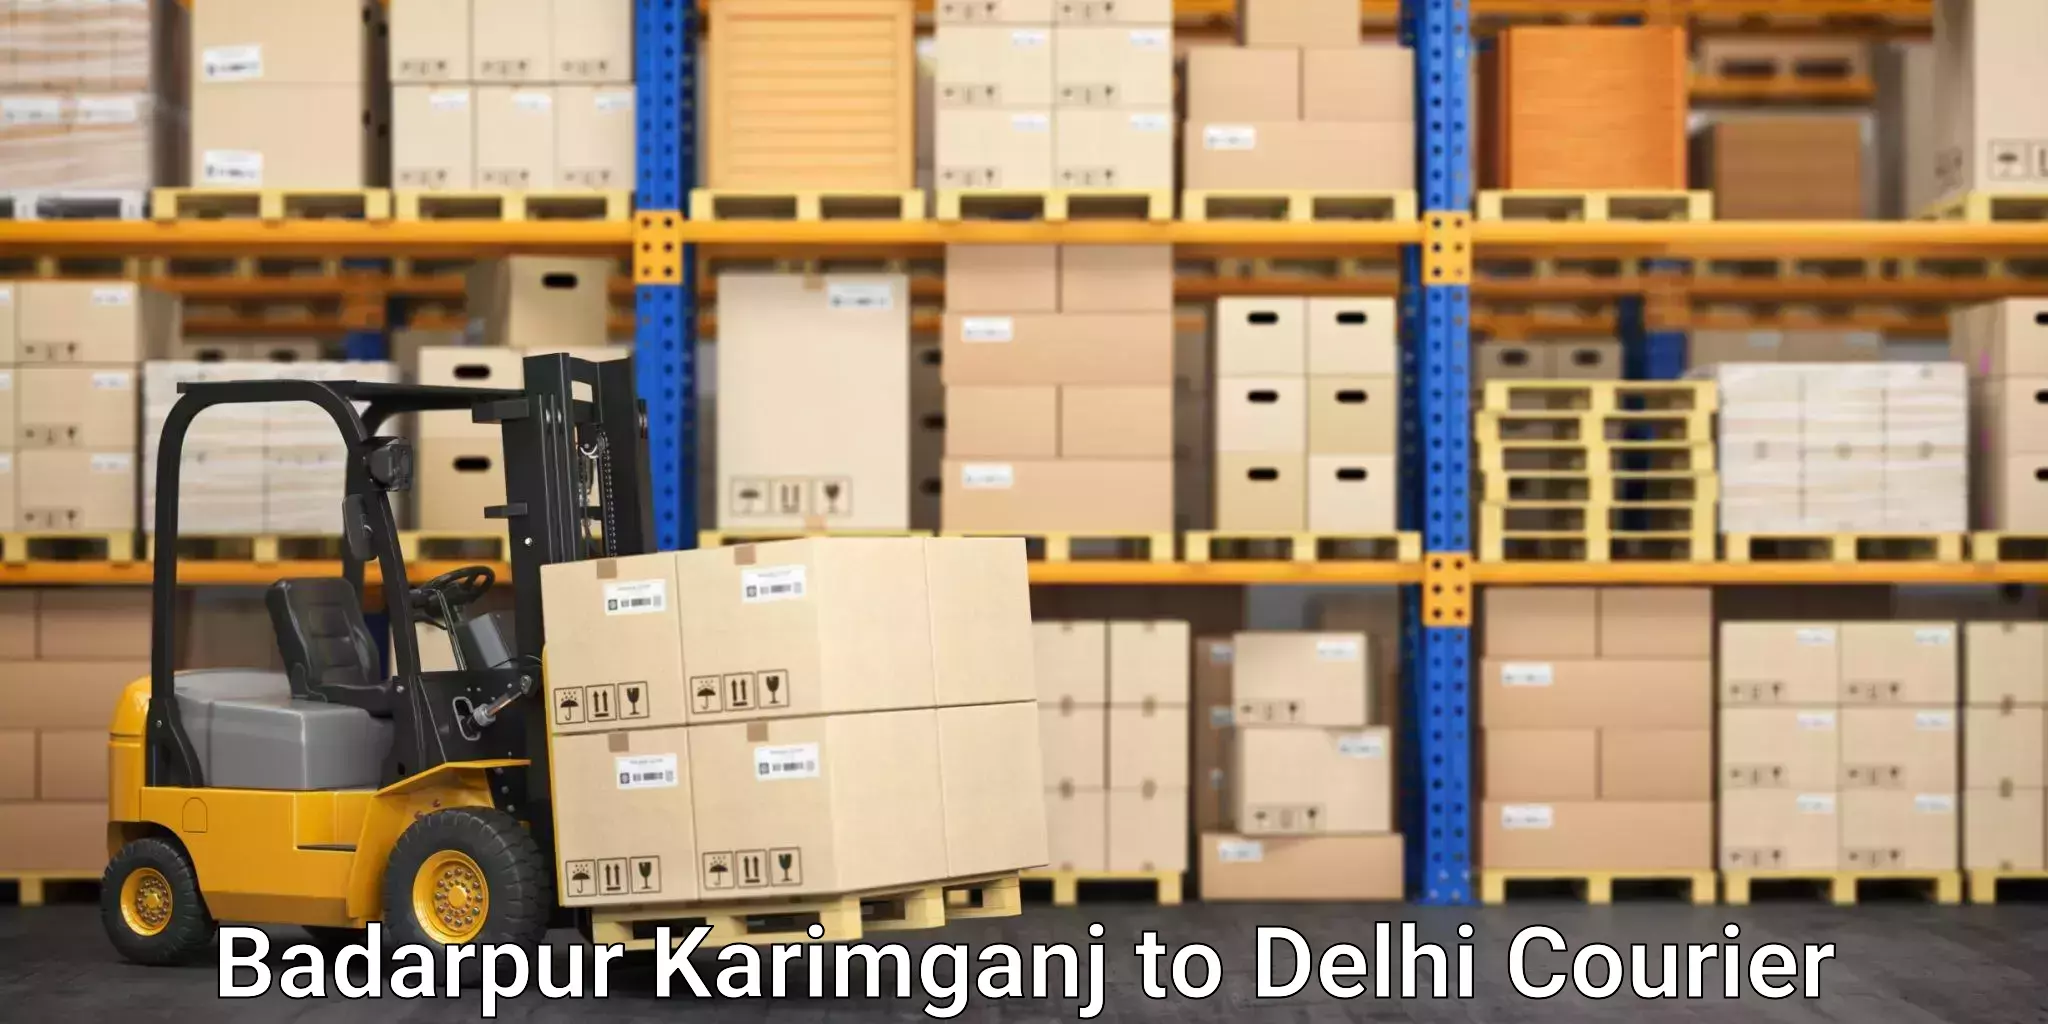 Same-day delivery solutions Badarpur Karimganj to Kalkaji